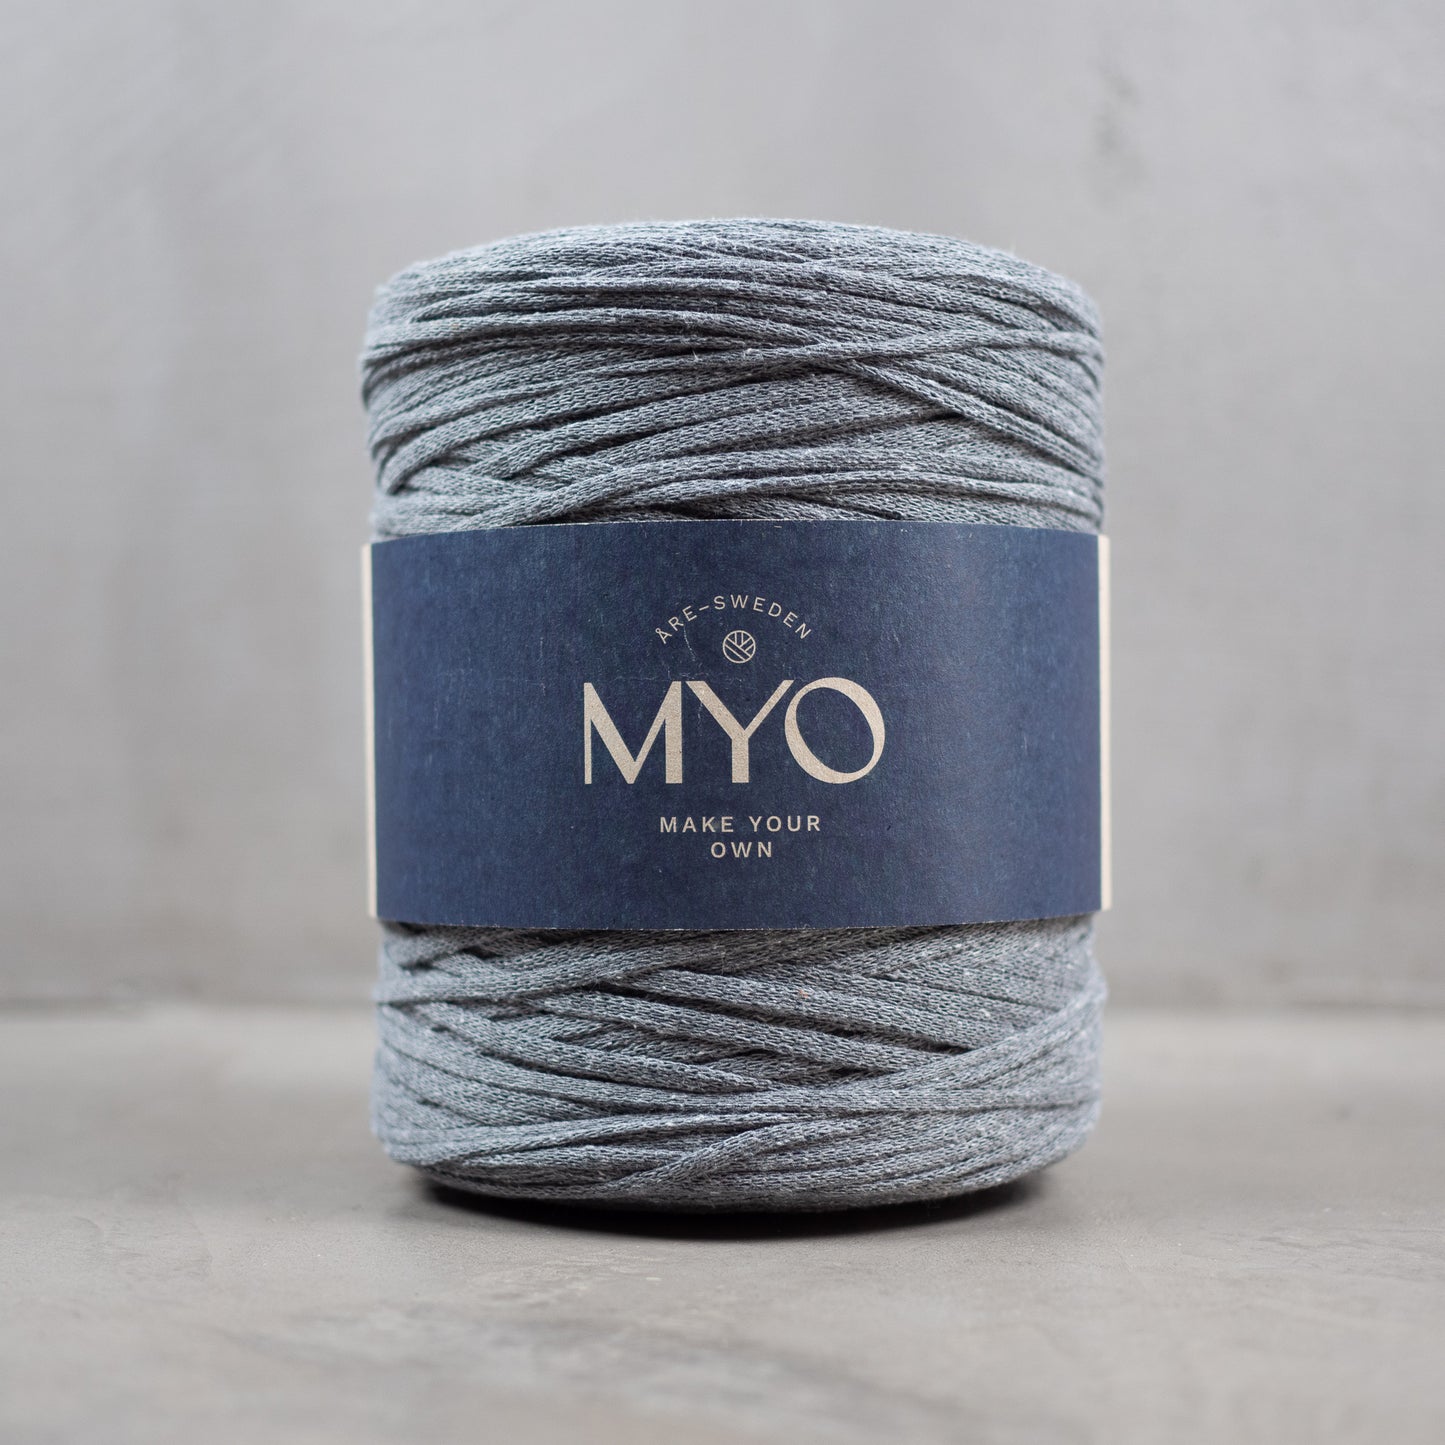 EKO Mini - 80% Recycled tube yarn for crocheting 